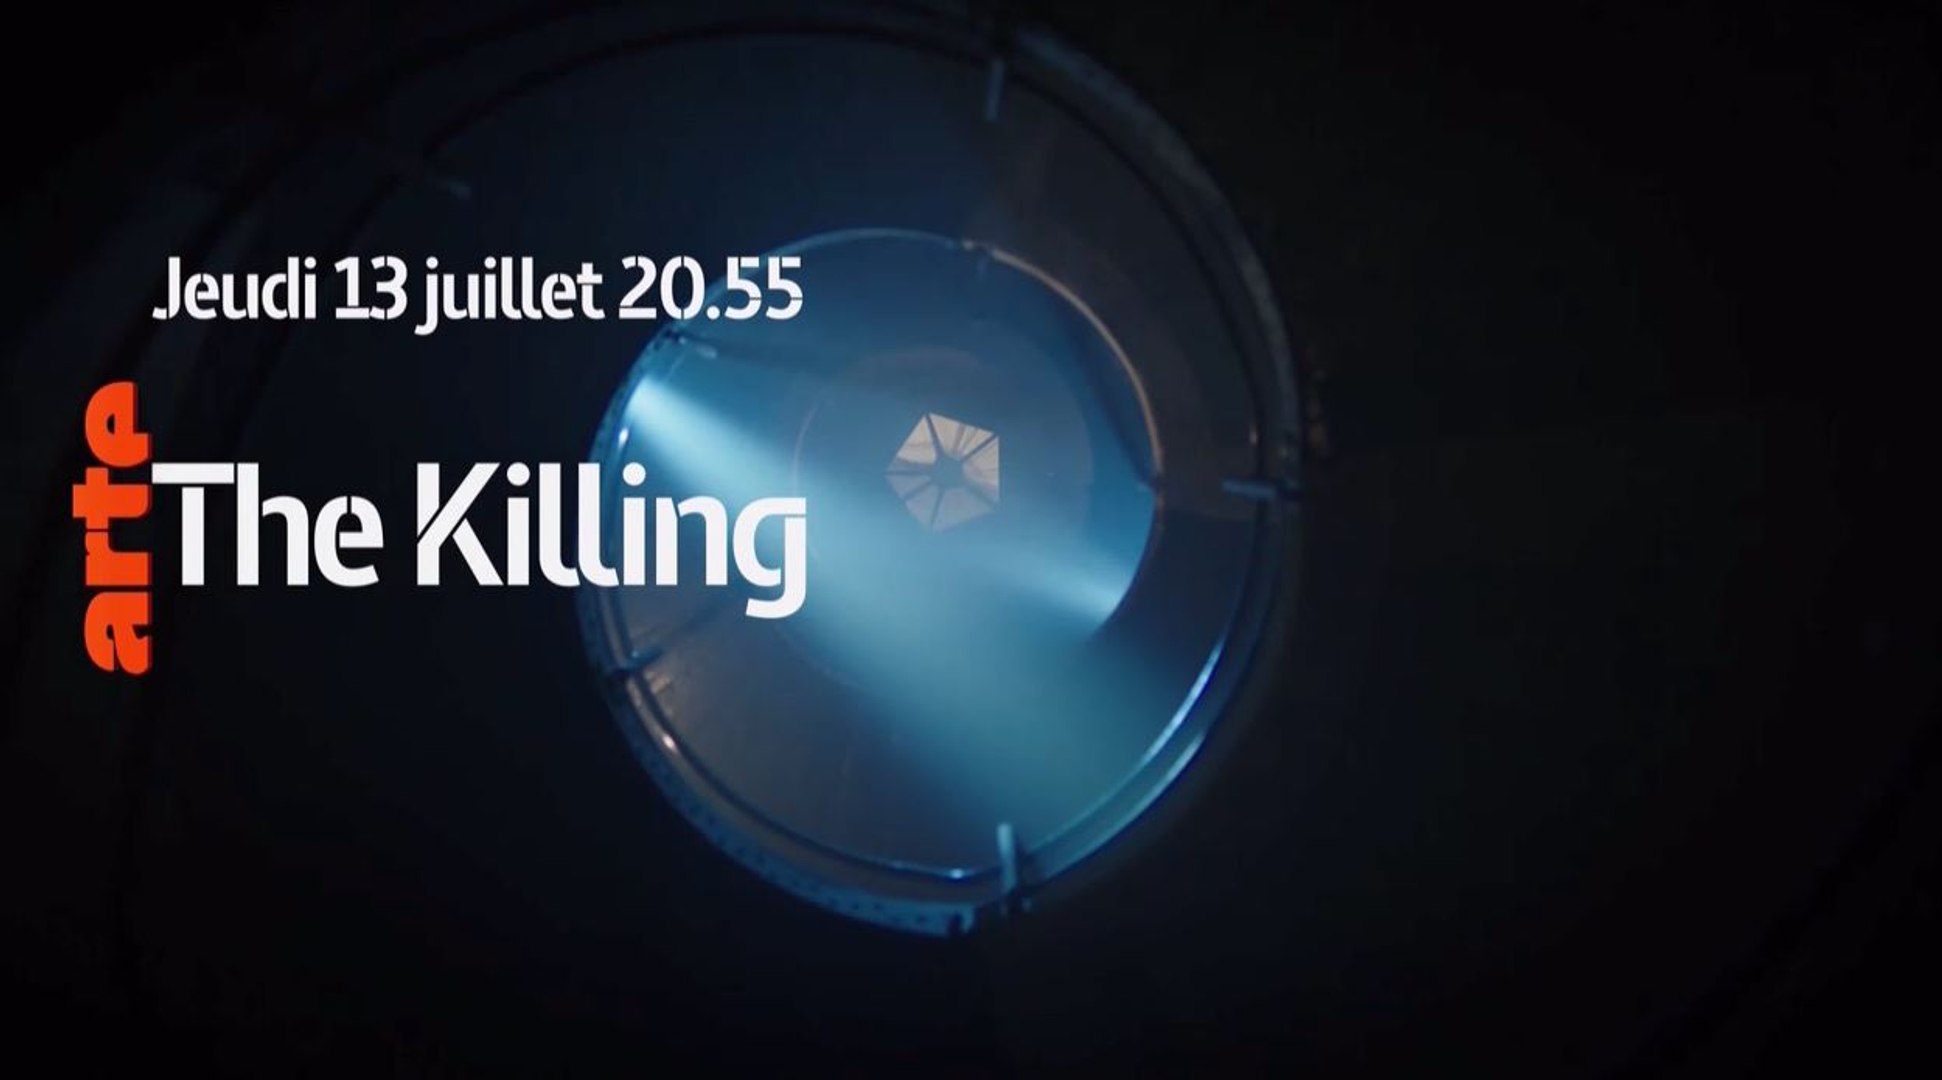 The Killing épisode 1 saison 3 - 13 07 17 - Arte - Vidéo Dailymotion